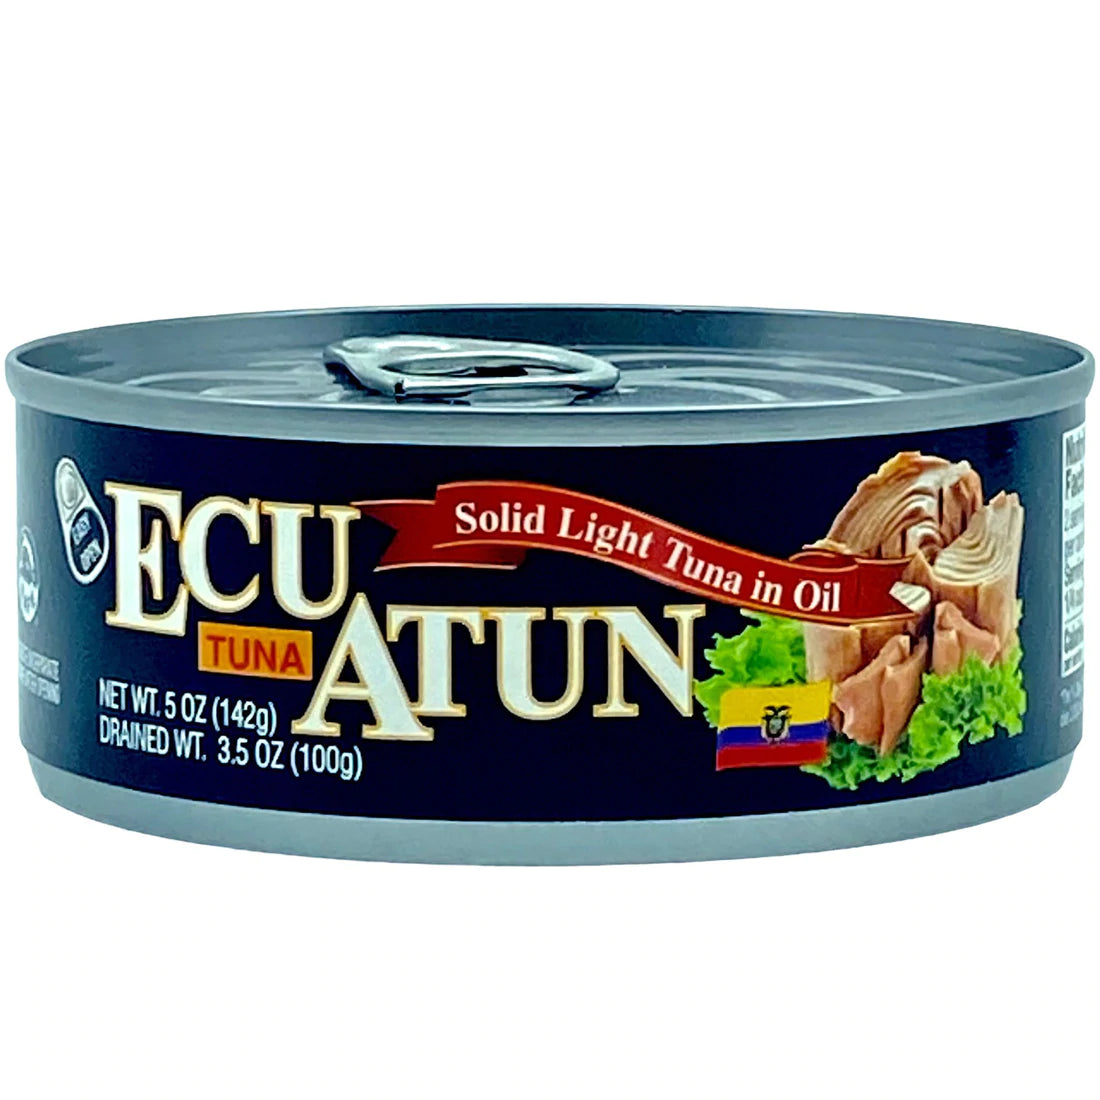 Ecu Atun en Aceite (Solid Light Tuna in Oil) 5oz